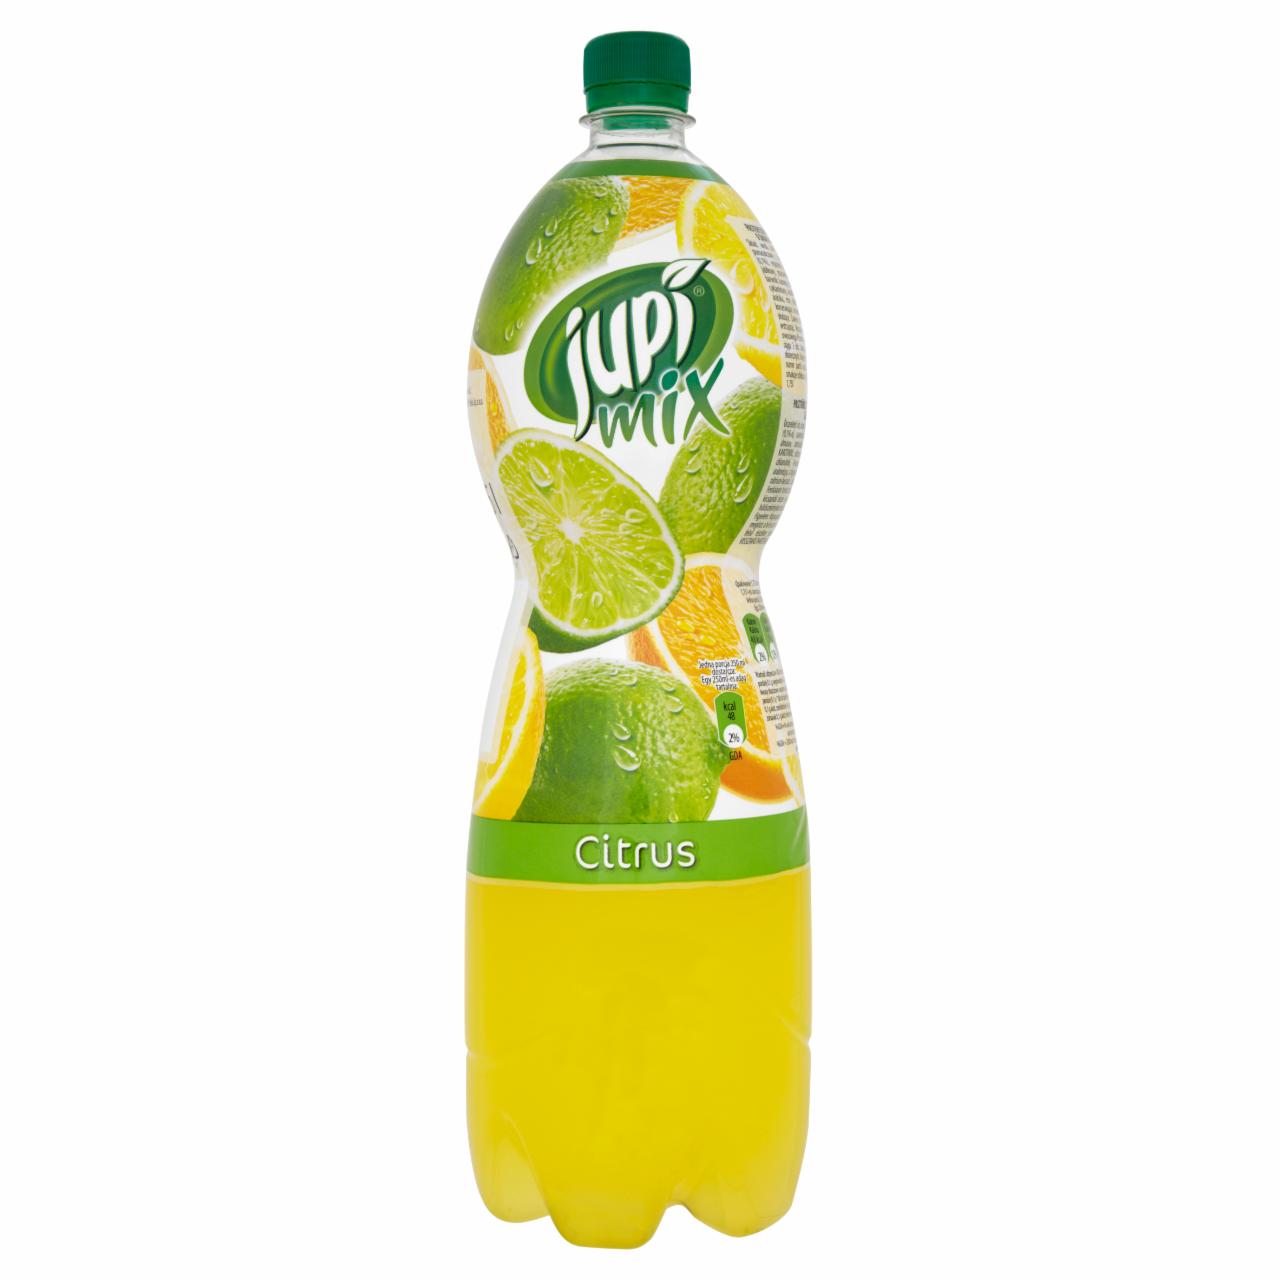 Zdjęcia - Jupi Mix Citrus Napój niegazowany 1,75 l